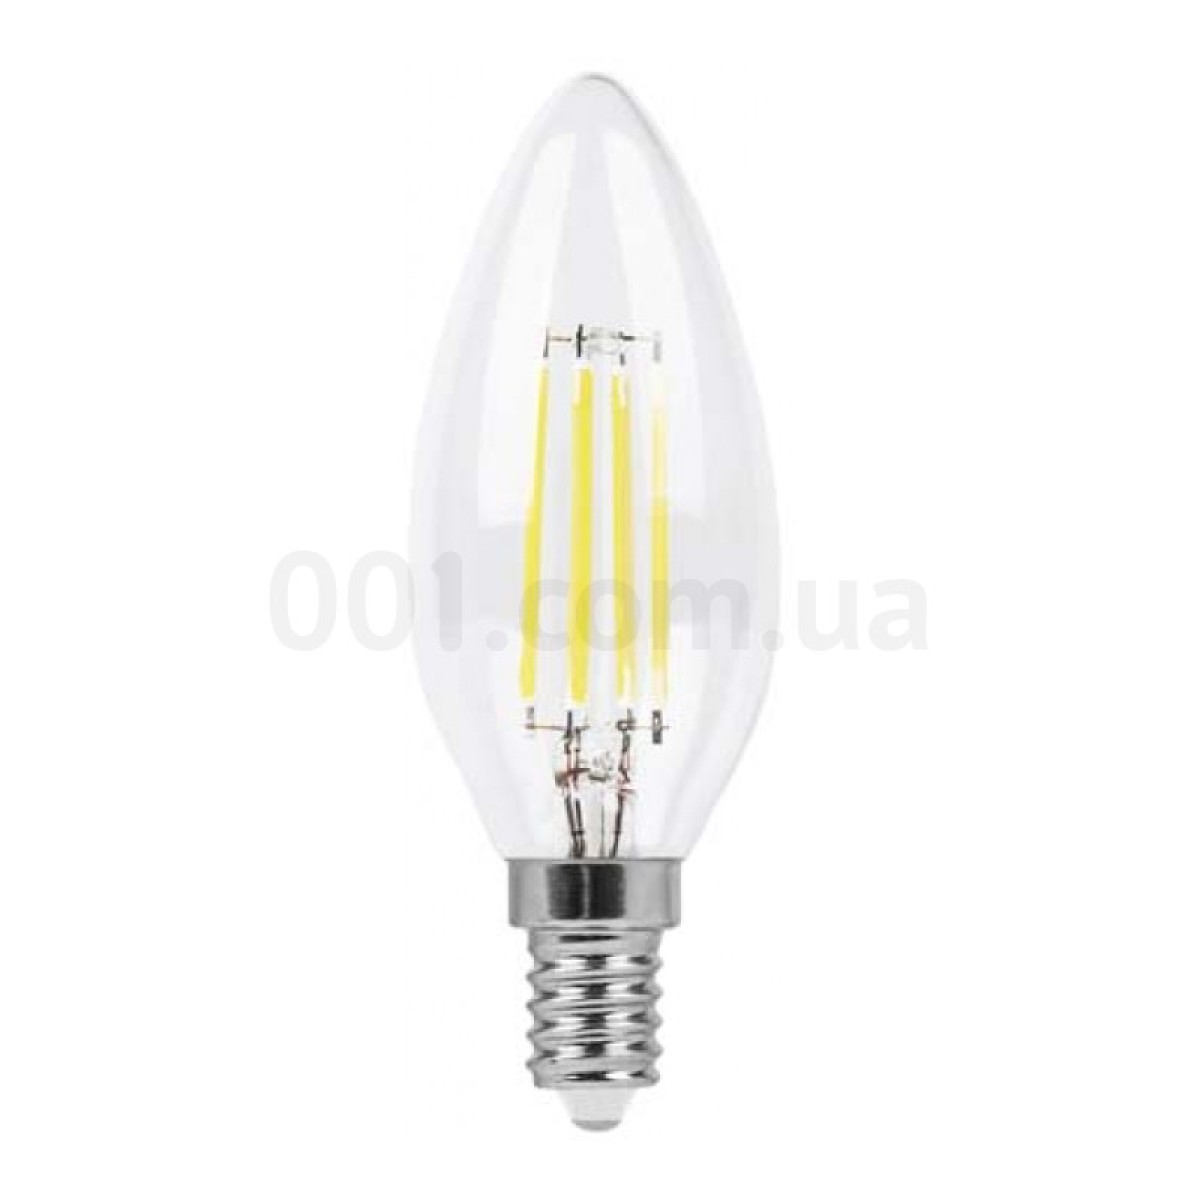 Светодиодная лампа LB-58 C37 (свеча) филамент 4Вт 4000K E14, Feron 256_256.jpg